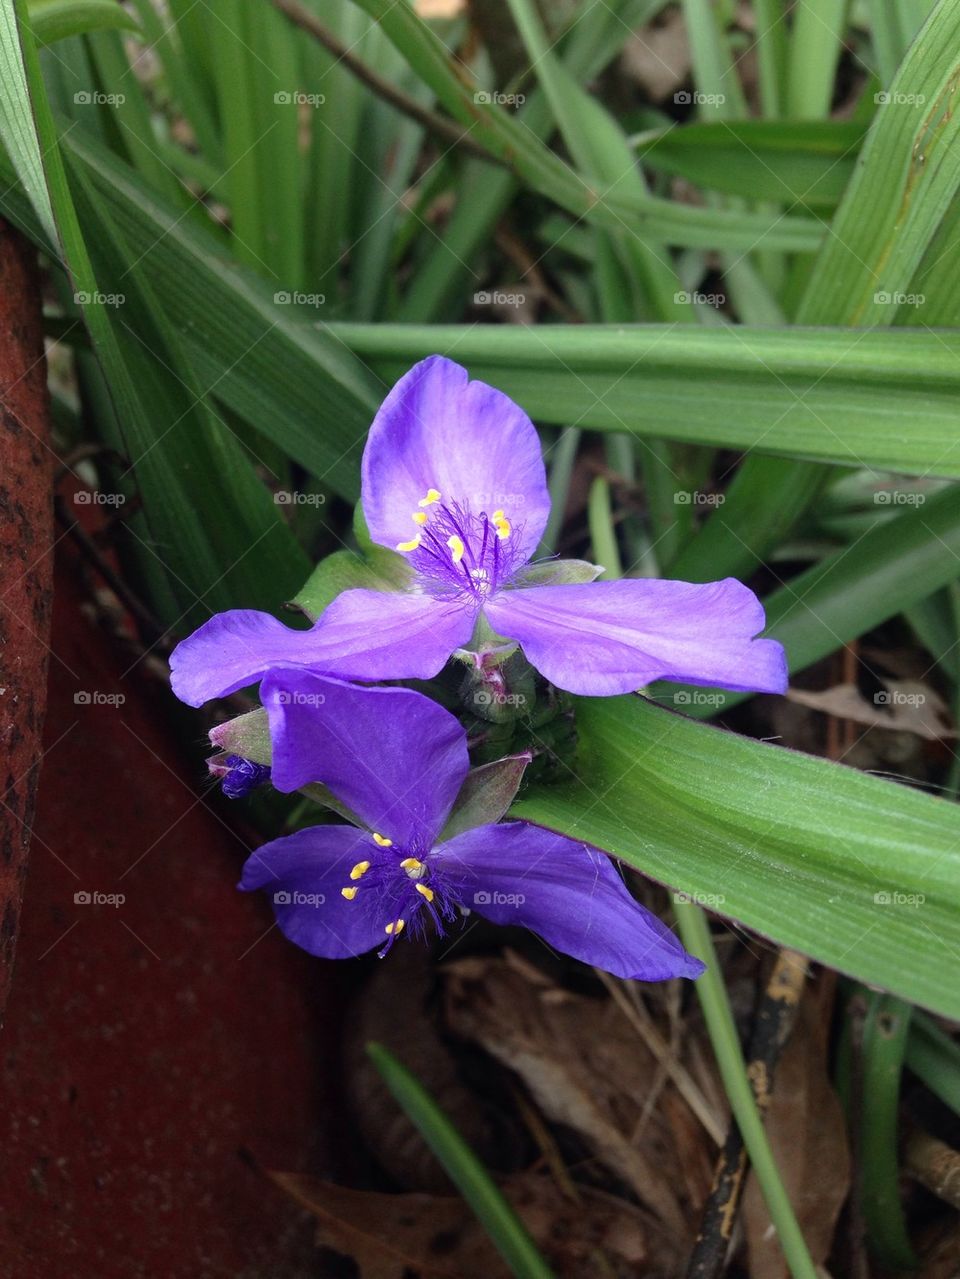 Pretty purple flower